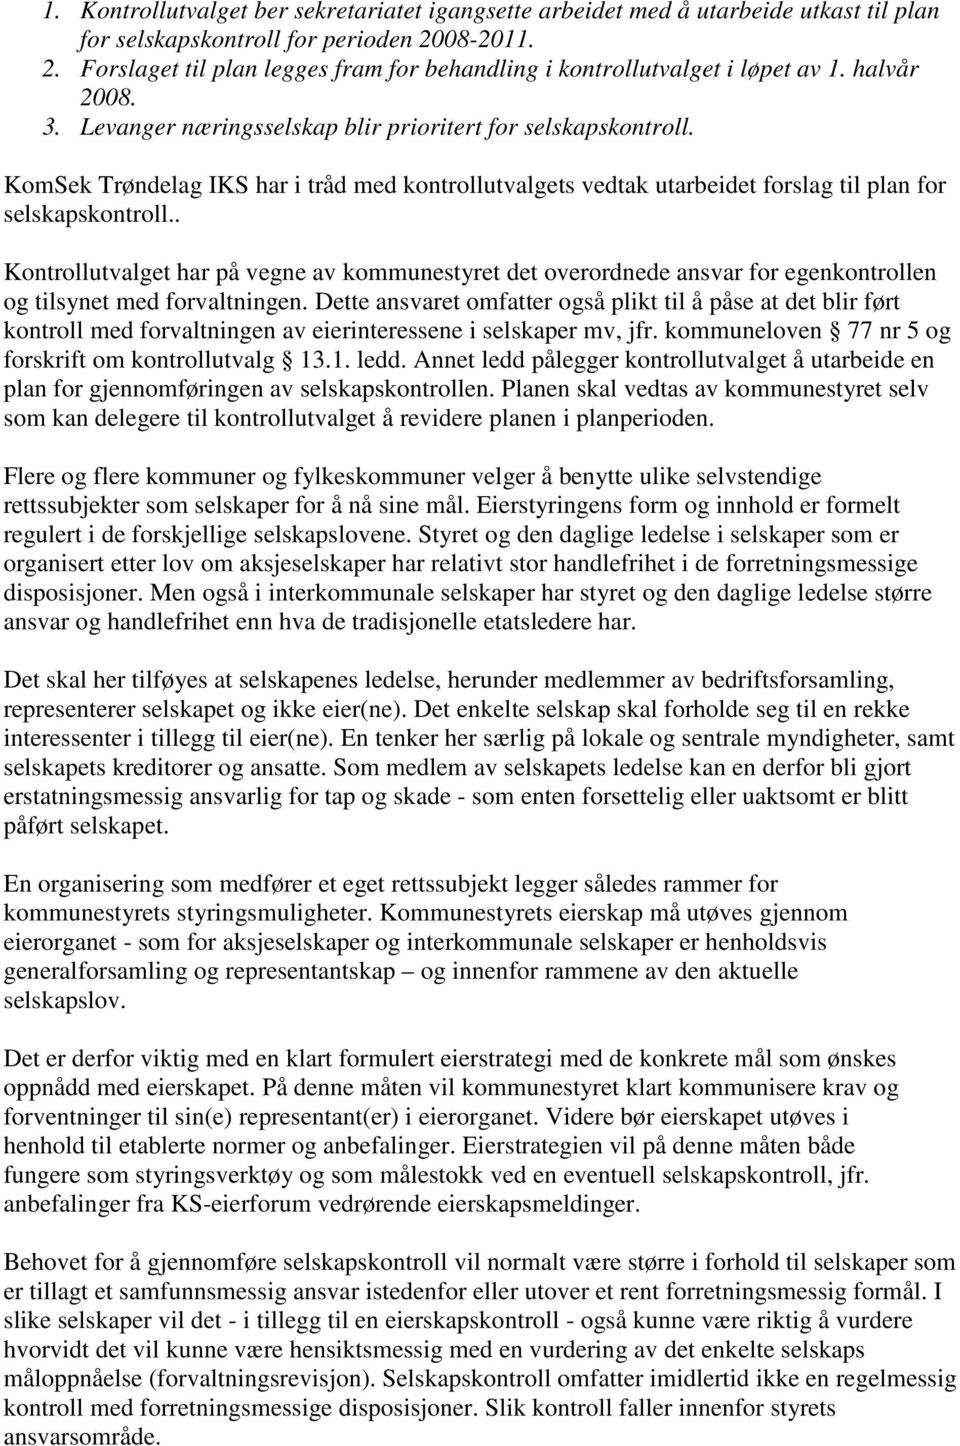 KomSek Trøndelag IKS har i tråd med kontrollutvalgets vedtak utarbeidet forslag til plan for selskapskontroll.